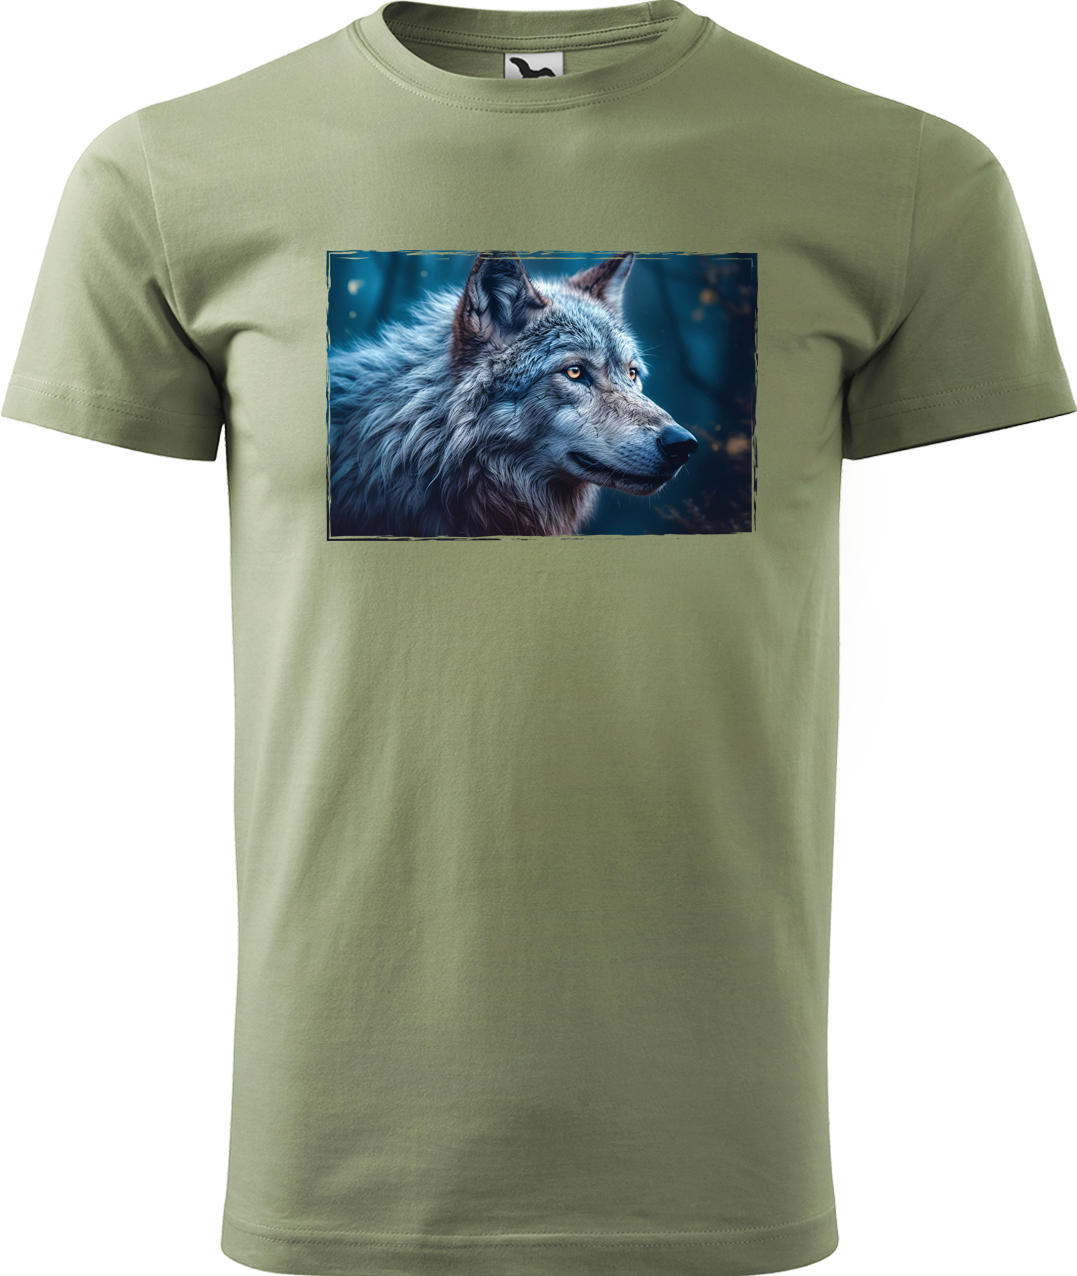 Pánské tričko s vlkem - Modrý vlk Velikost: 4XL, Barva: Světlá khaki (28)